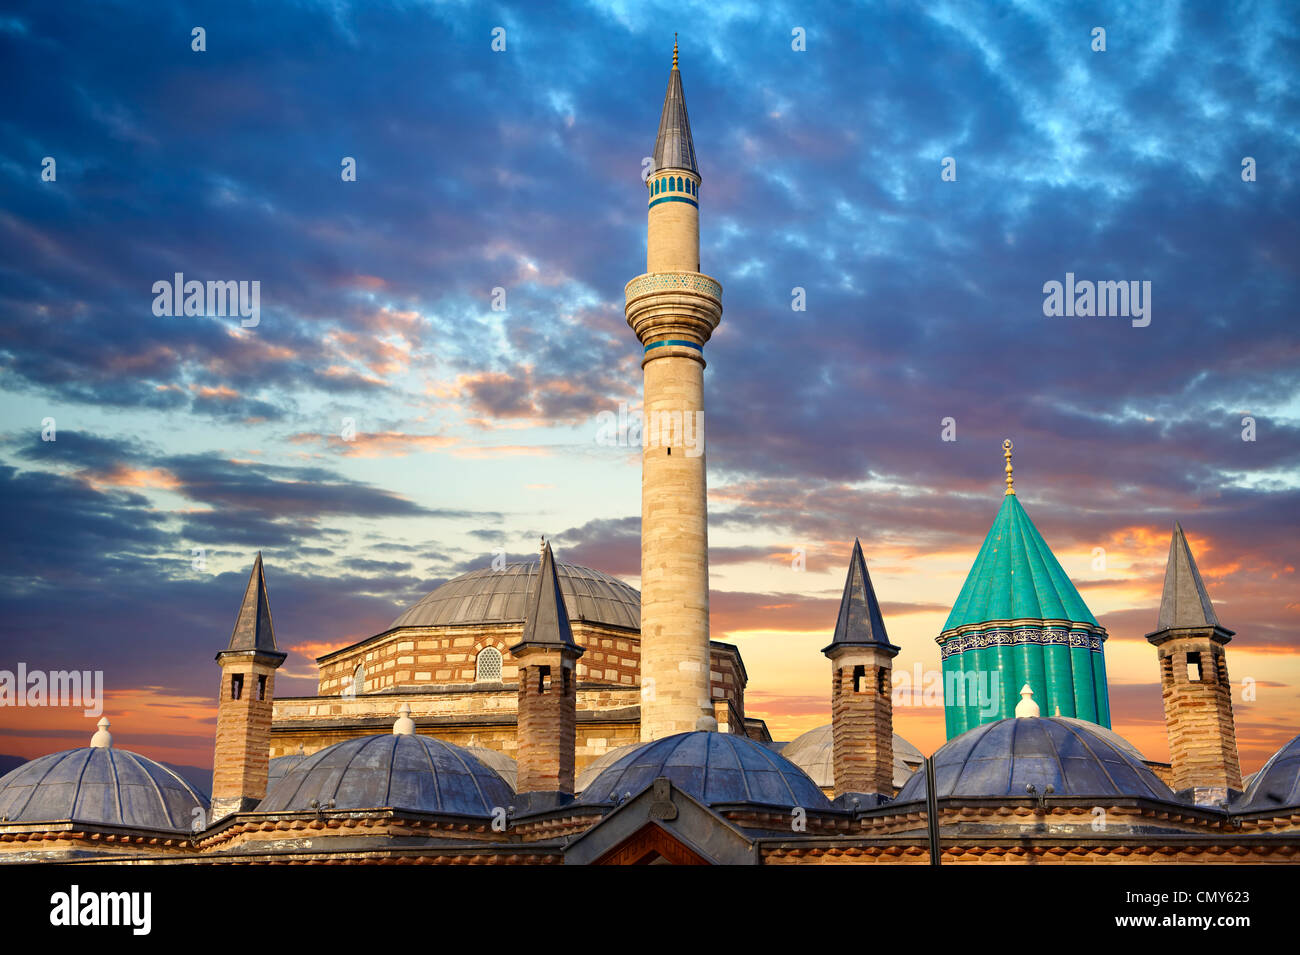 Comunidades de derviches del museo Mevlâna, el mausoleo de Jalal ad-Din Muhammad Rumi, Konya Turquía Foto de stock